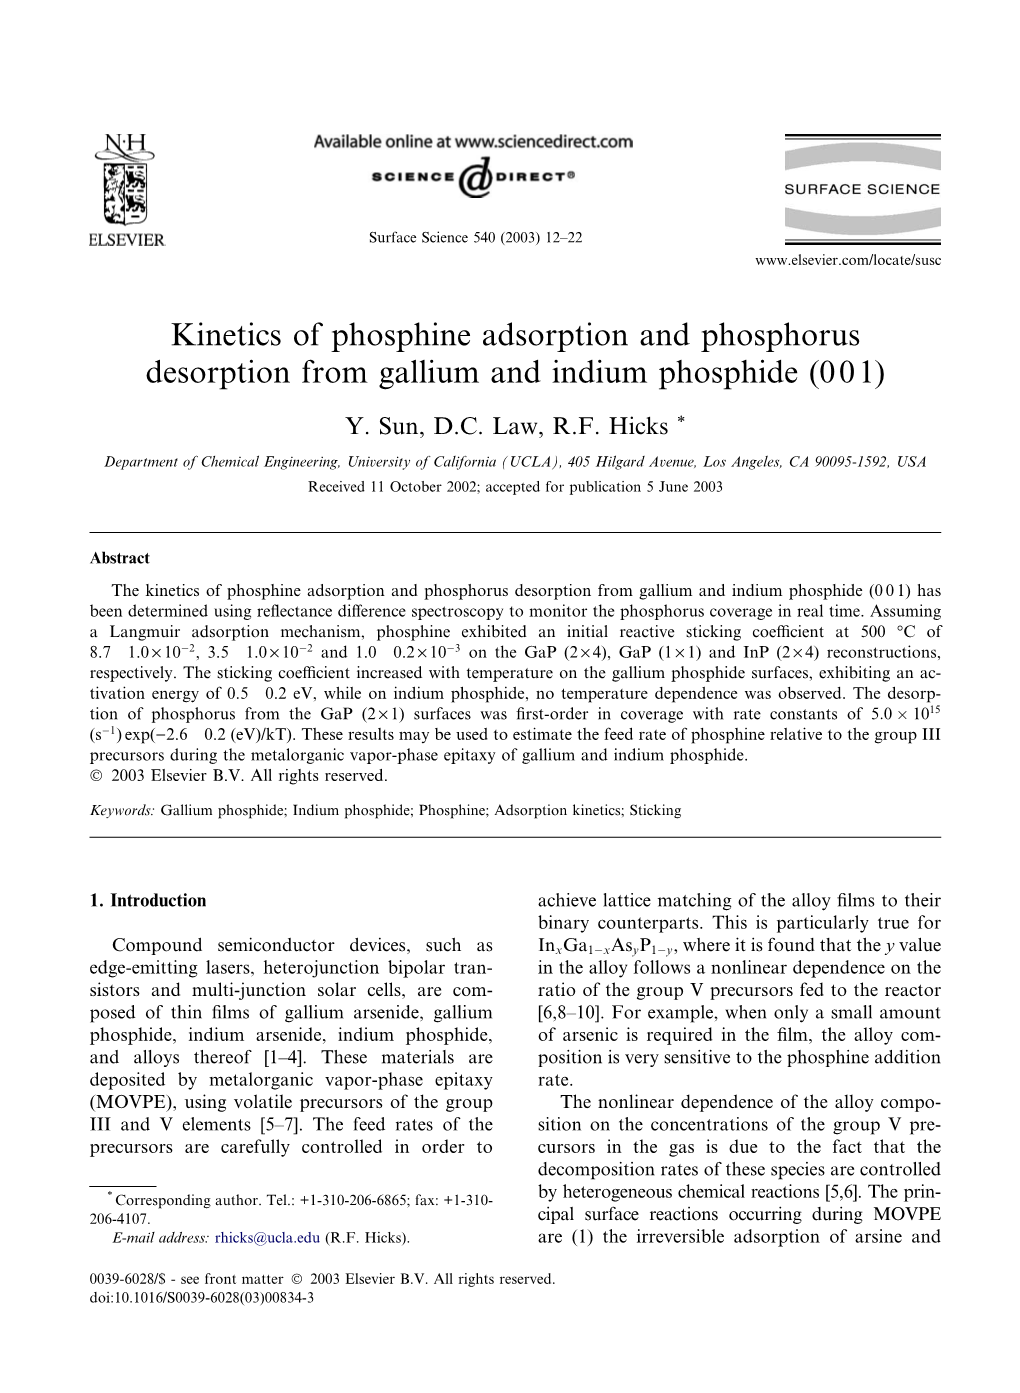 Kinetics of Phosphine Adsorption and Phosphorus Desorption from Gallium and Indium Phosphide (001)